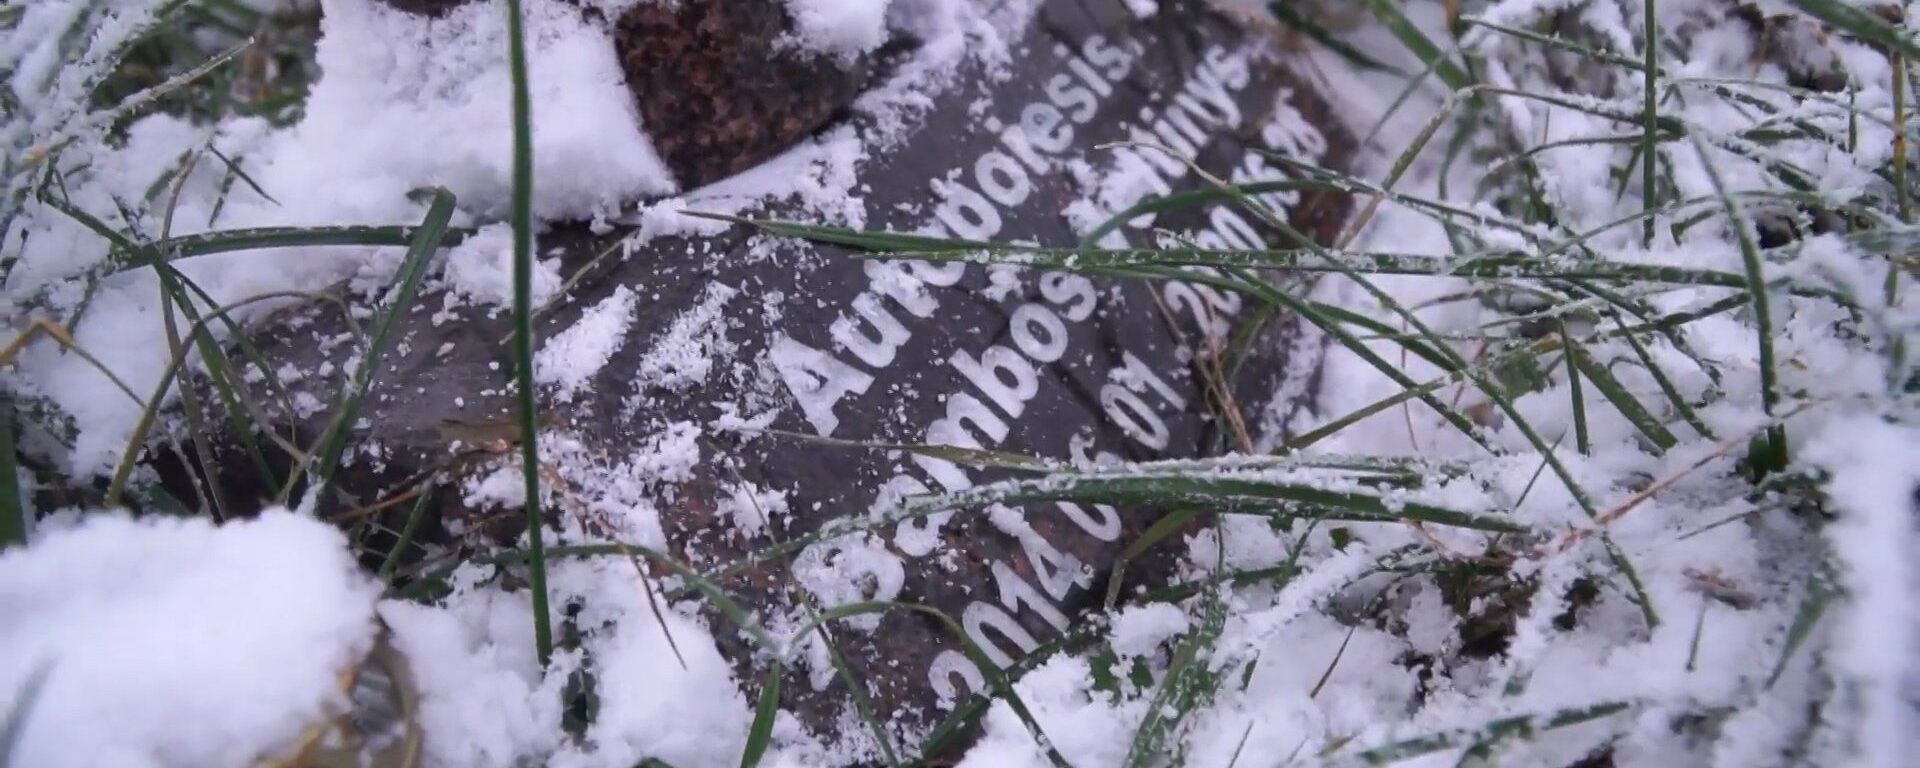 Куда попадает искусство после смерти: видео кладбища арт-объектов в Литве - Sputnik Lietuva, 1920, 05.01.2021